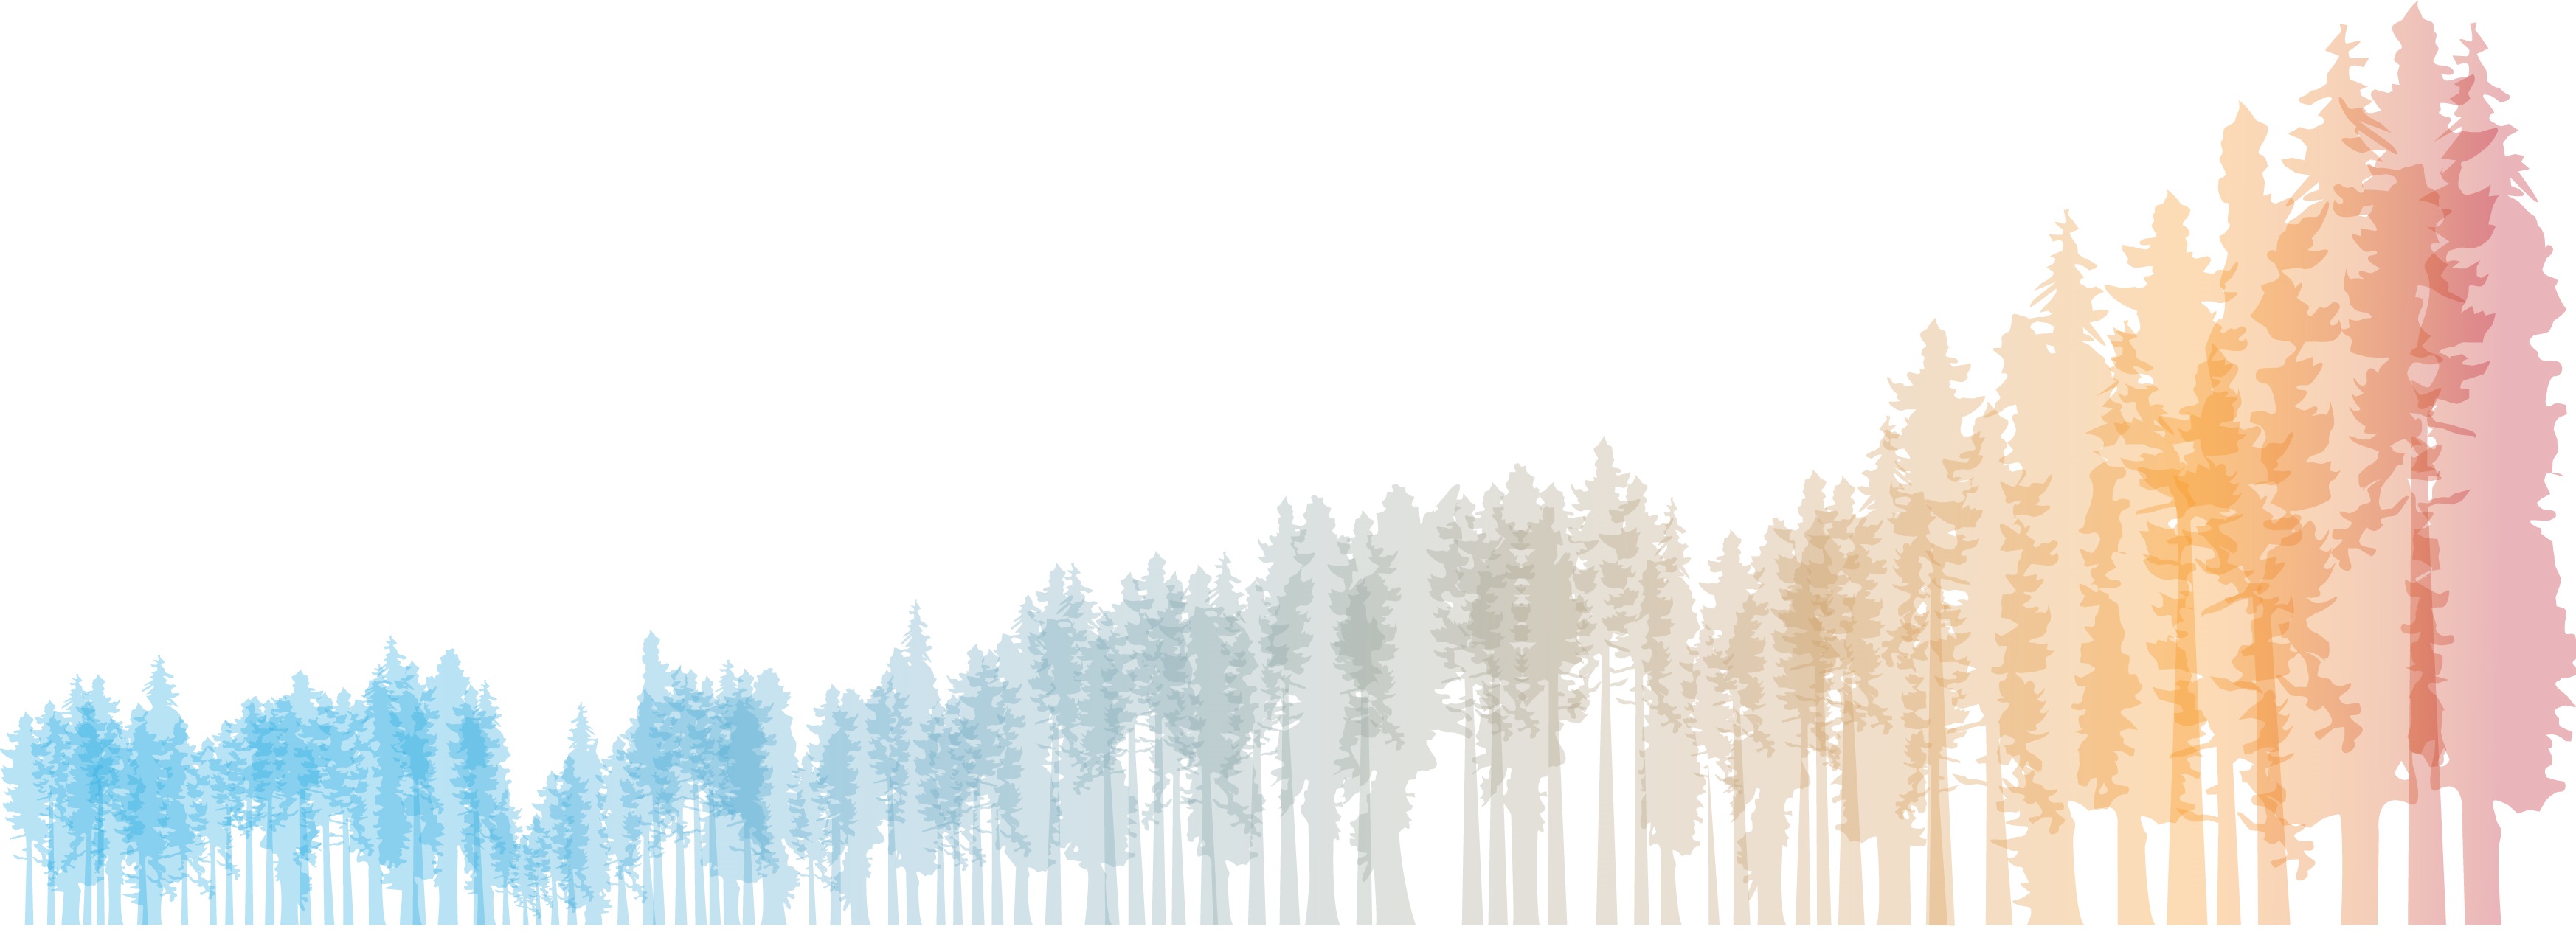 Swedish Climate Symposium logo.